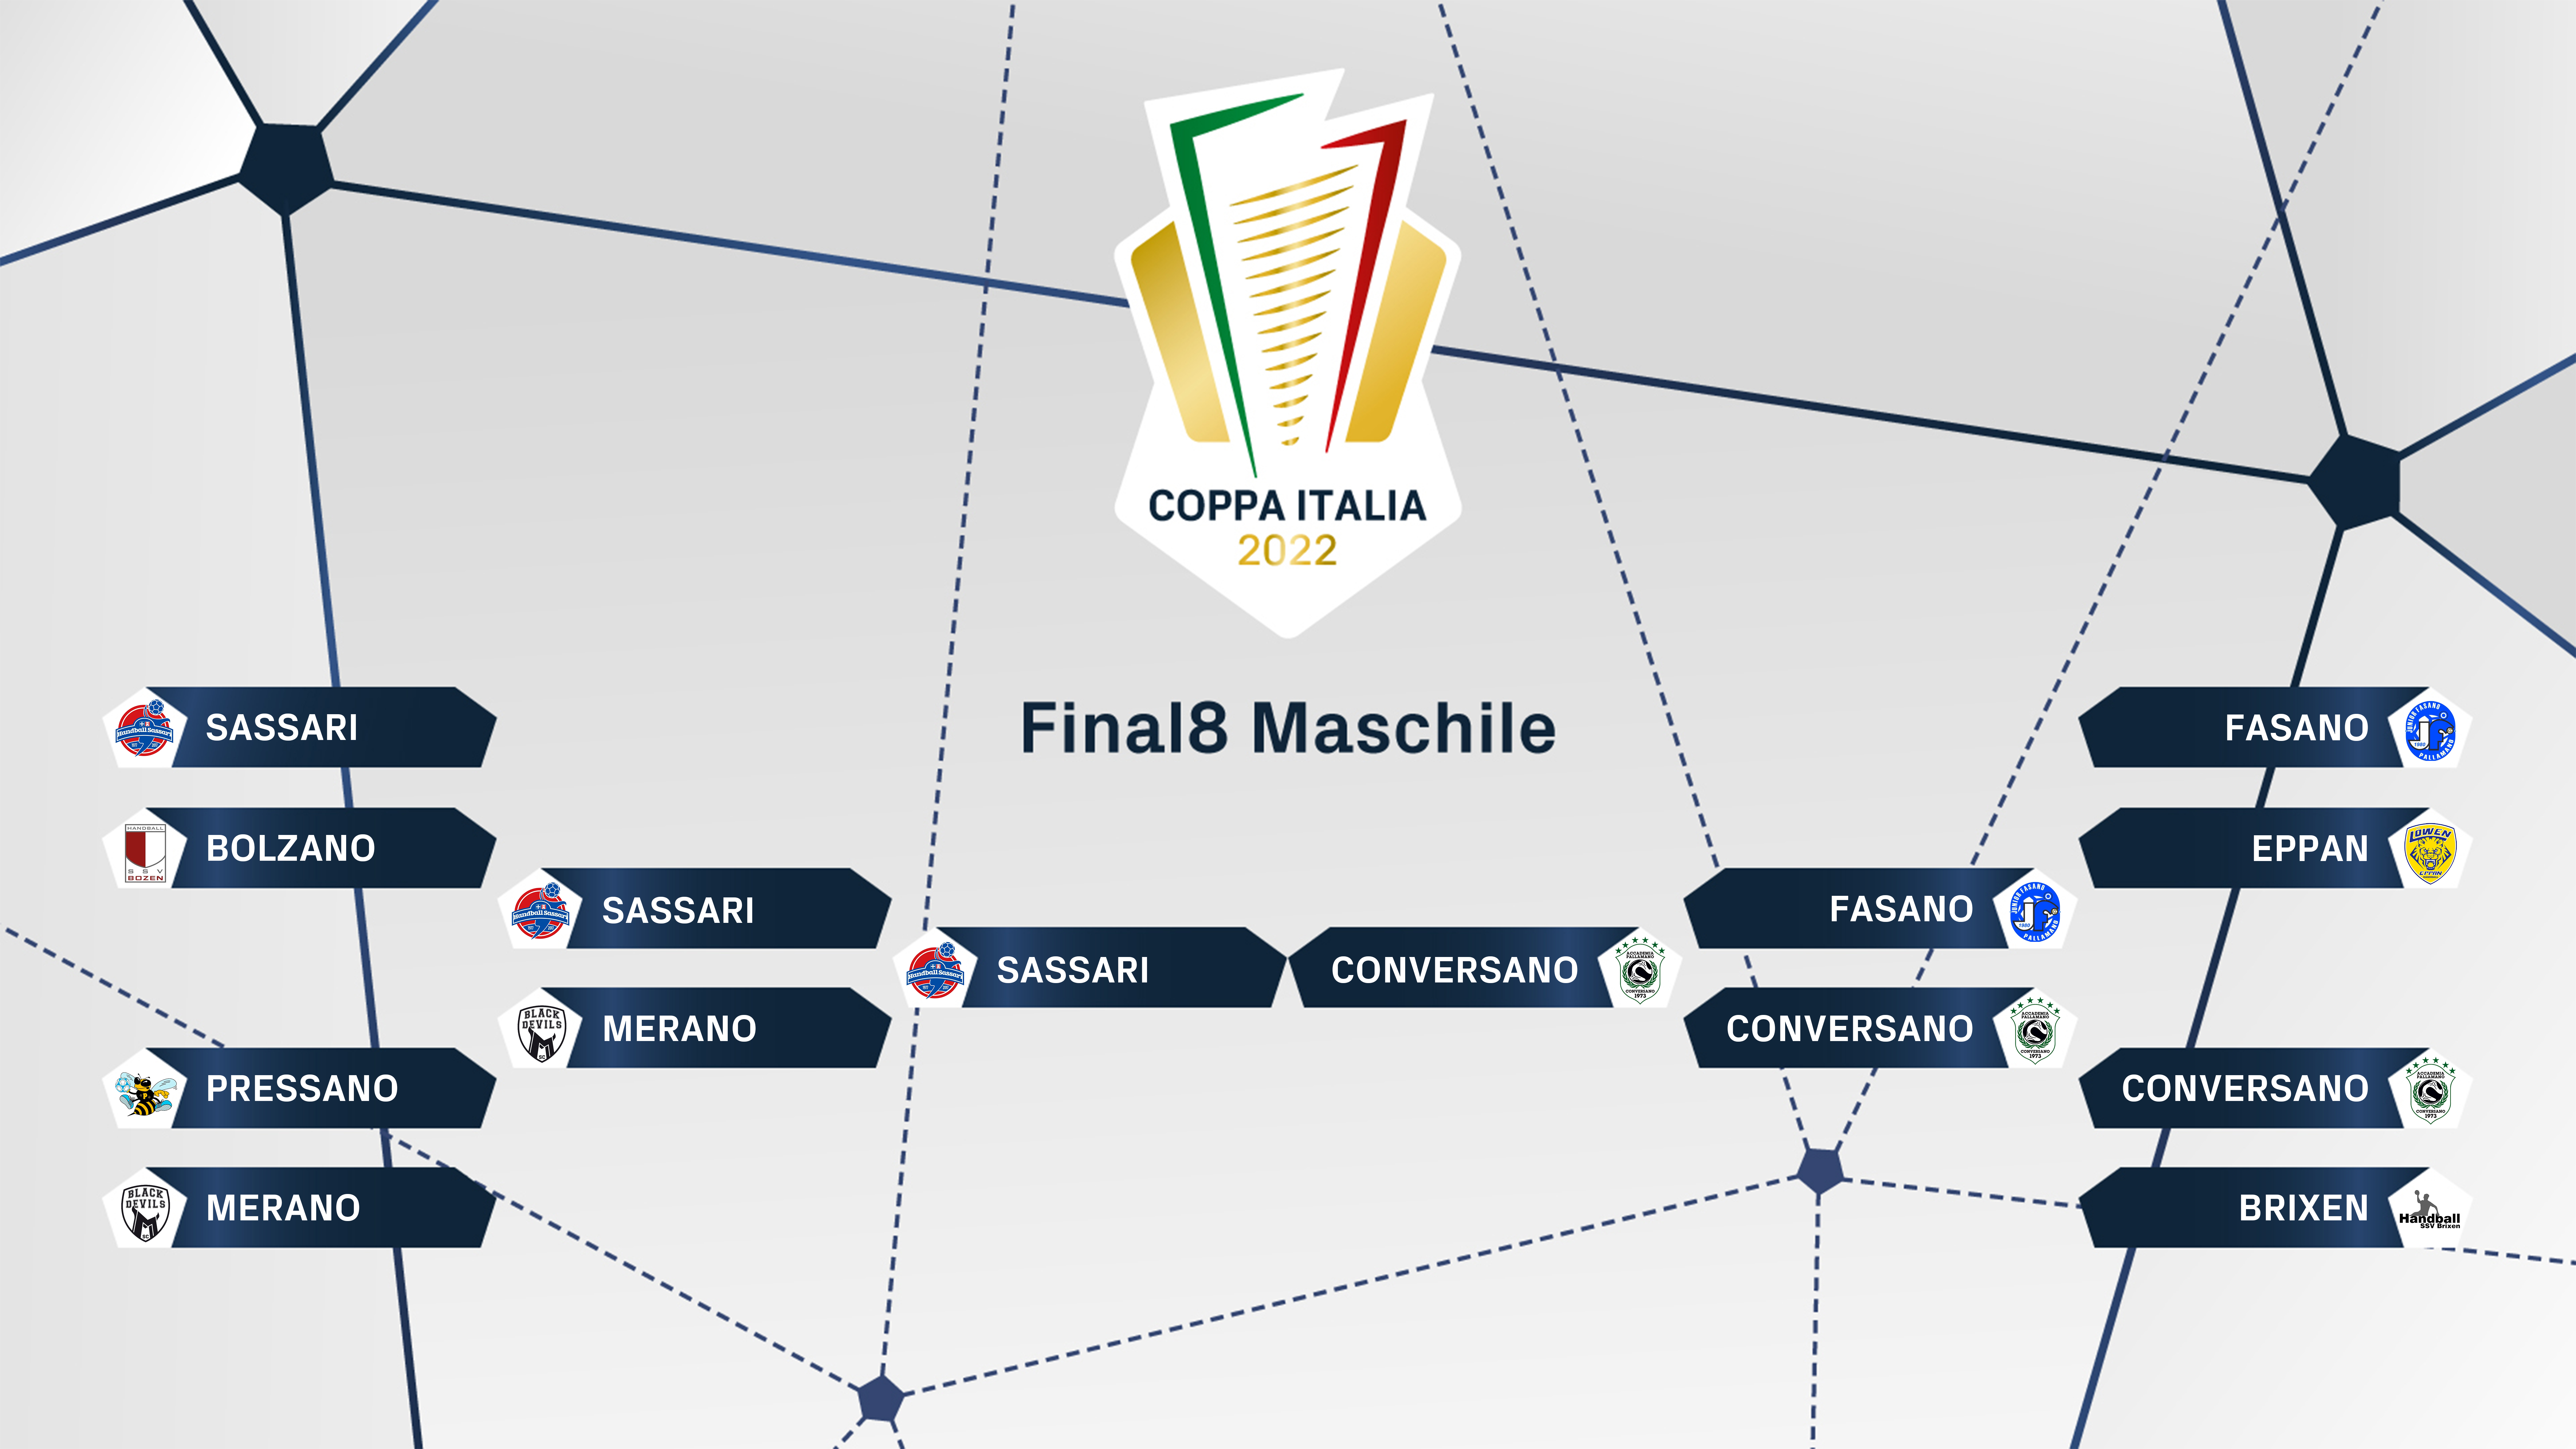 FIGH Coppa Italia tabelloni mas finale